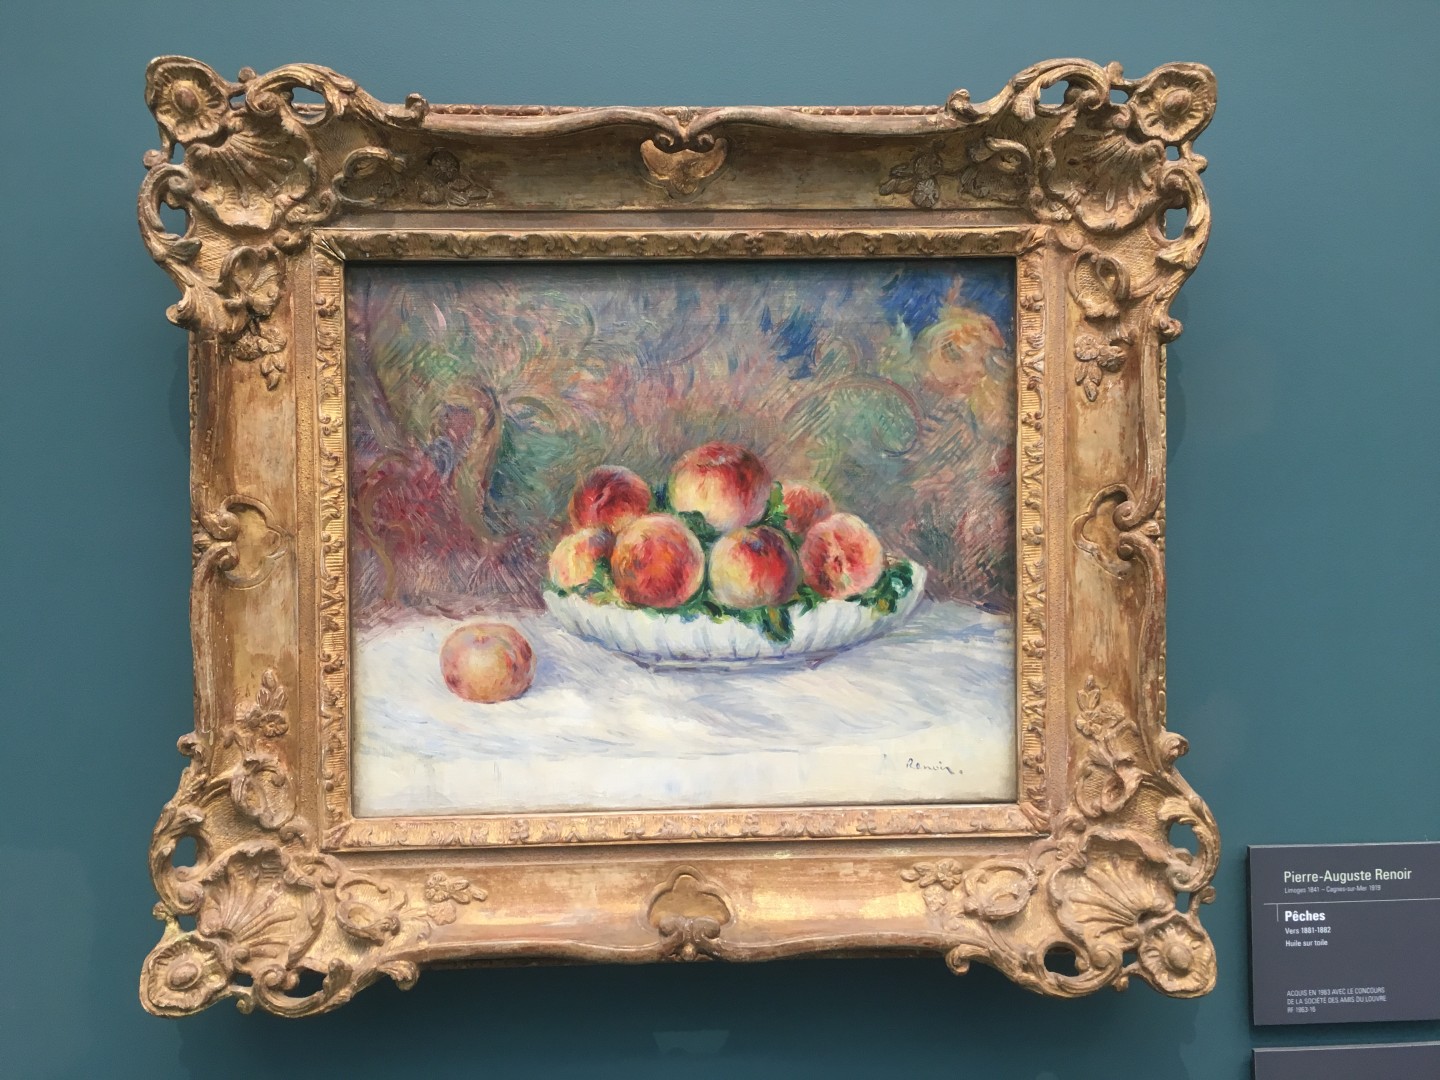 Pierre-Auguste Renoir Pches